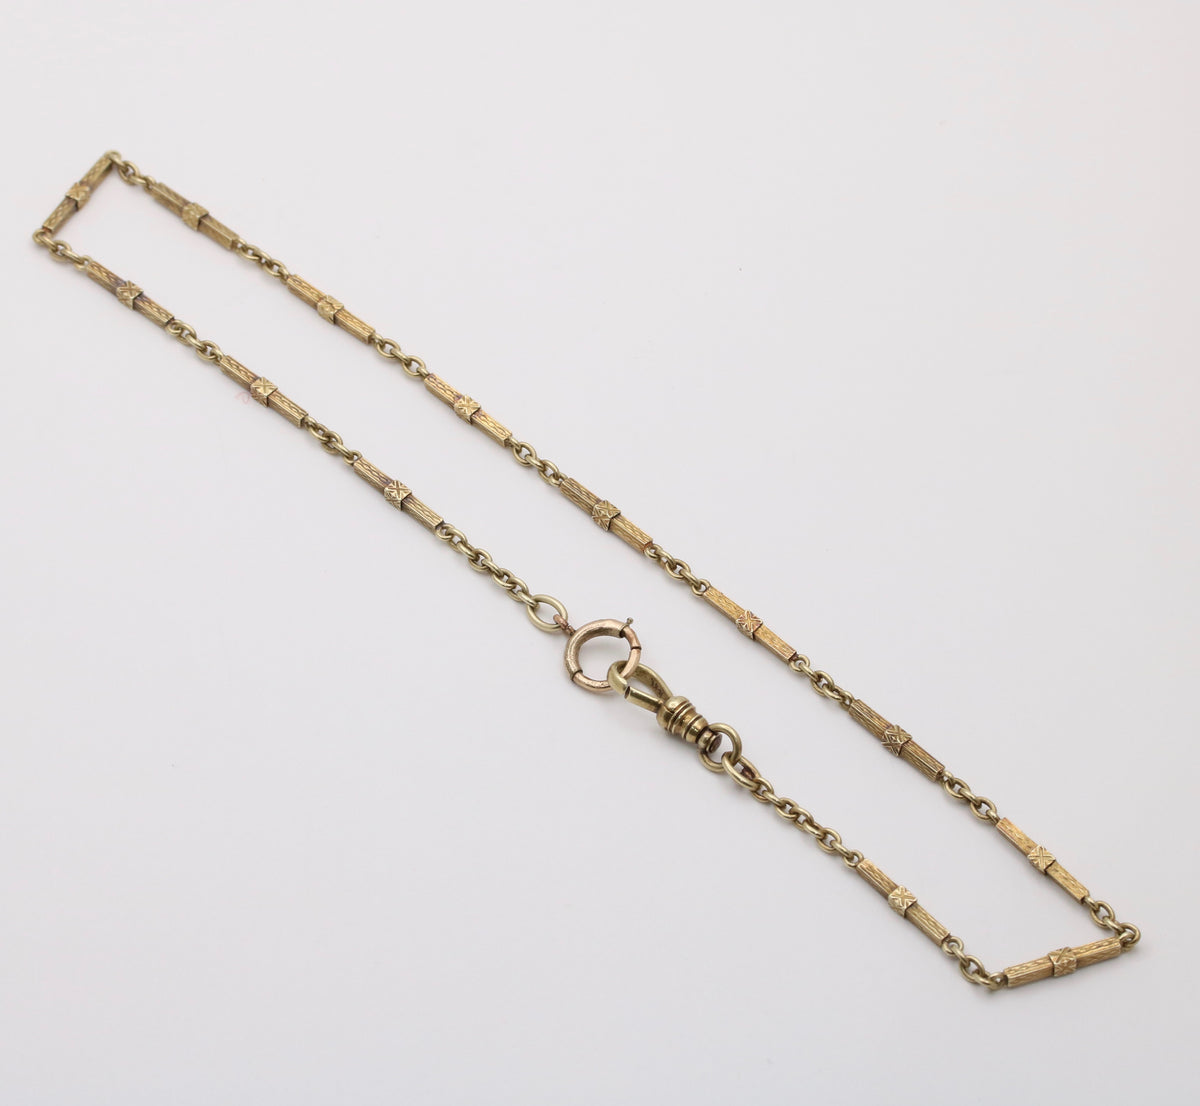 Art Deco 14K Gold Bar Link Watch Chain, 14.6” Long